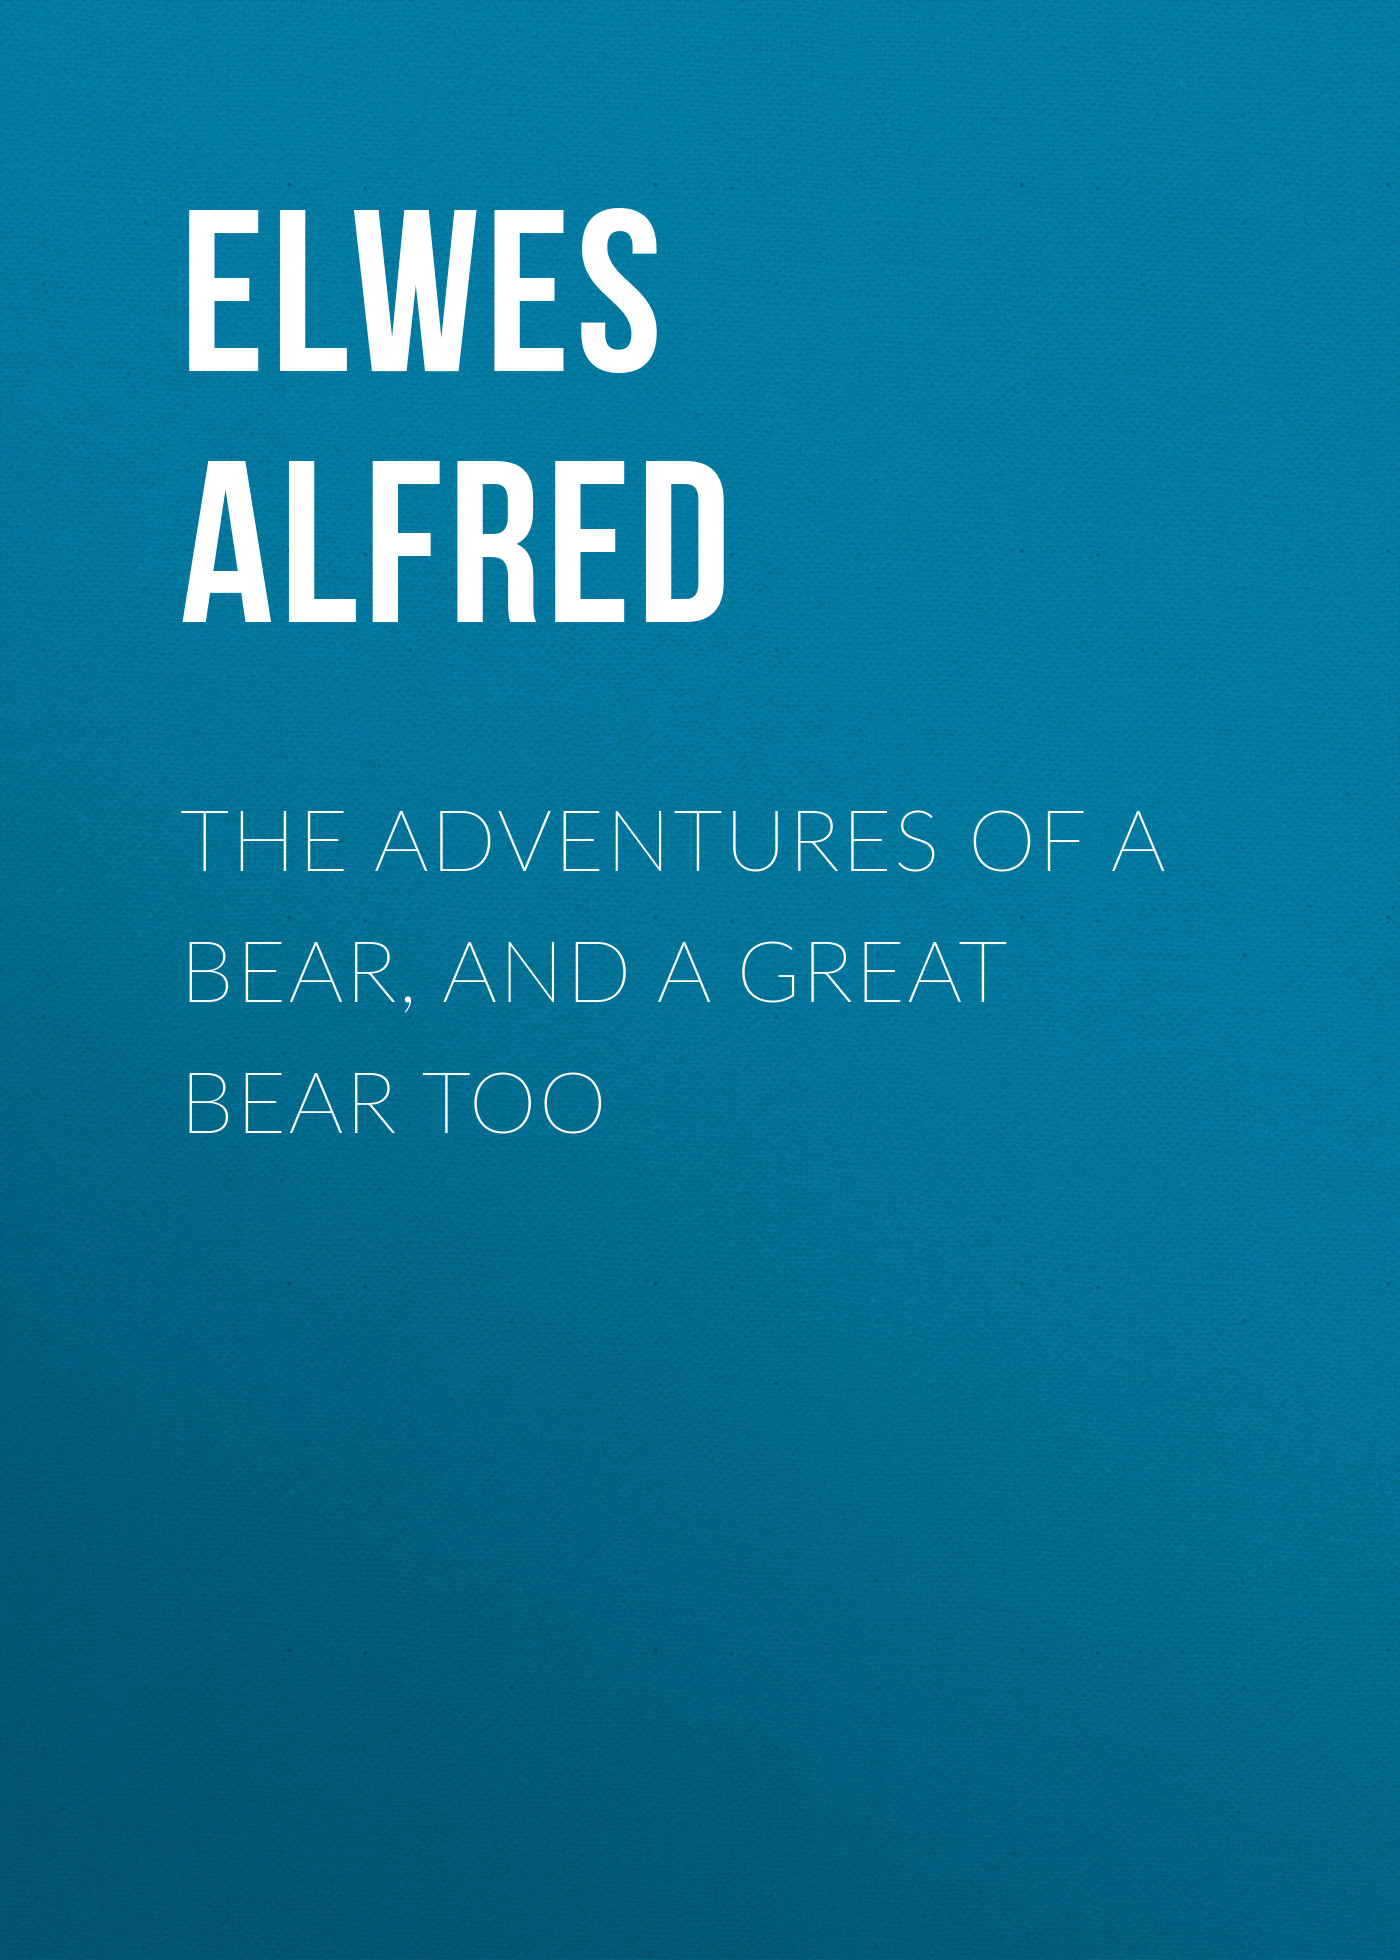 Книга The Adventures of a Bear, and a Great Bear Too из серии , созданная Alfred Elwes, может относится к жанру Природа и животные, Зарубежная старинная литература, Зарубежная классика. Стоимость книги The Adventures of a Bear, and a Great Bear Too  с идентификатором 24712921 составляет 0 руб.